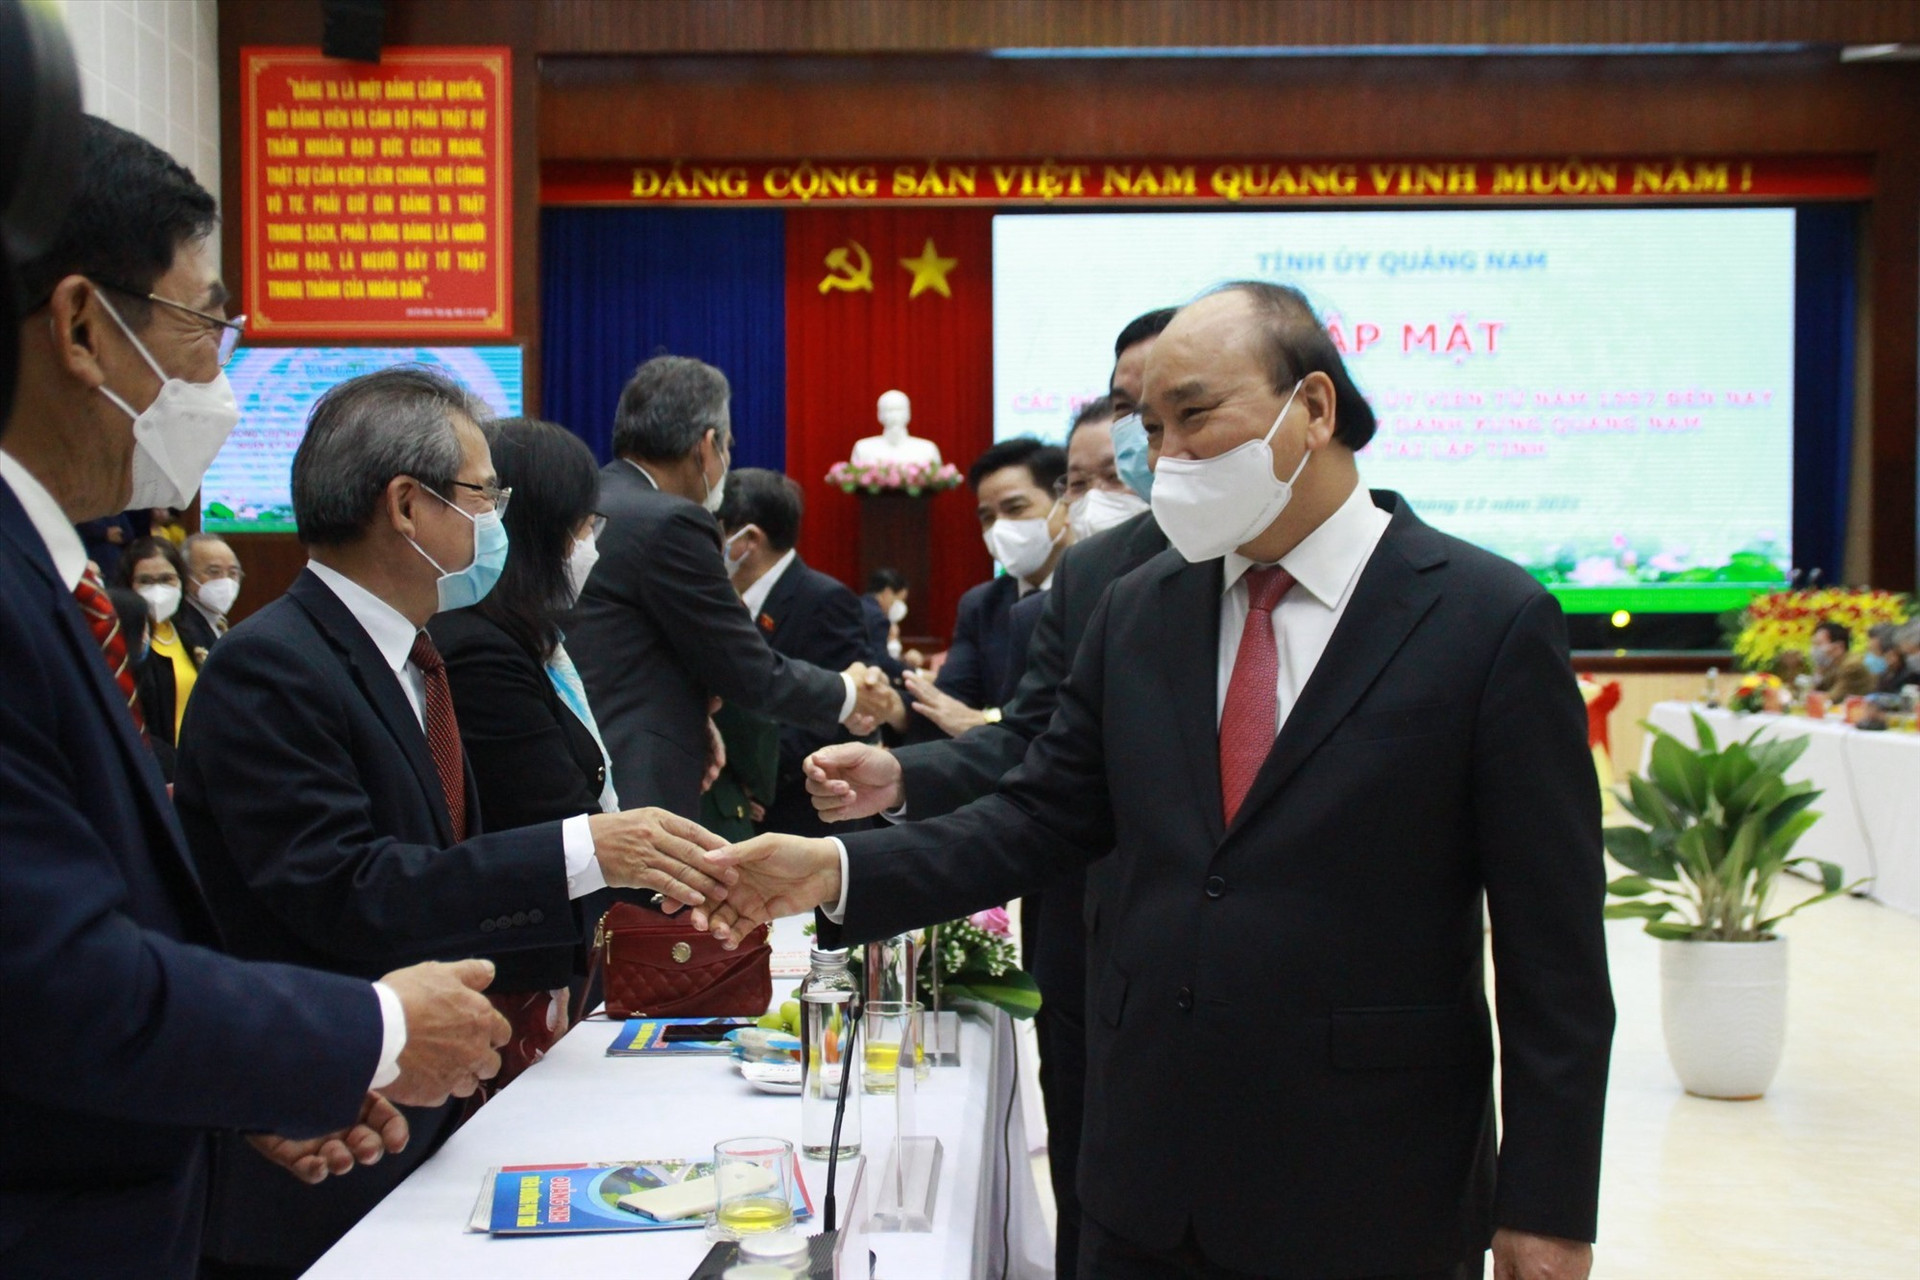 Chủ tịch nước Nguyễn Xuân Phúc gặp mặt các đồng chí nguyên tỉnh ủy viên từ năm 1997 đến nay. Ảnh: P.V